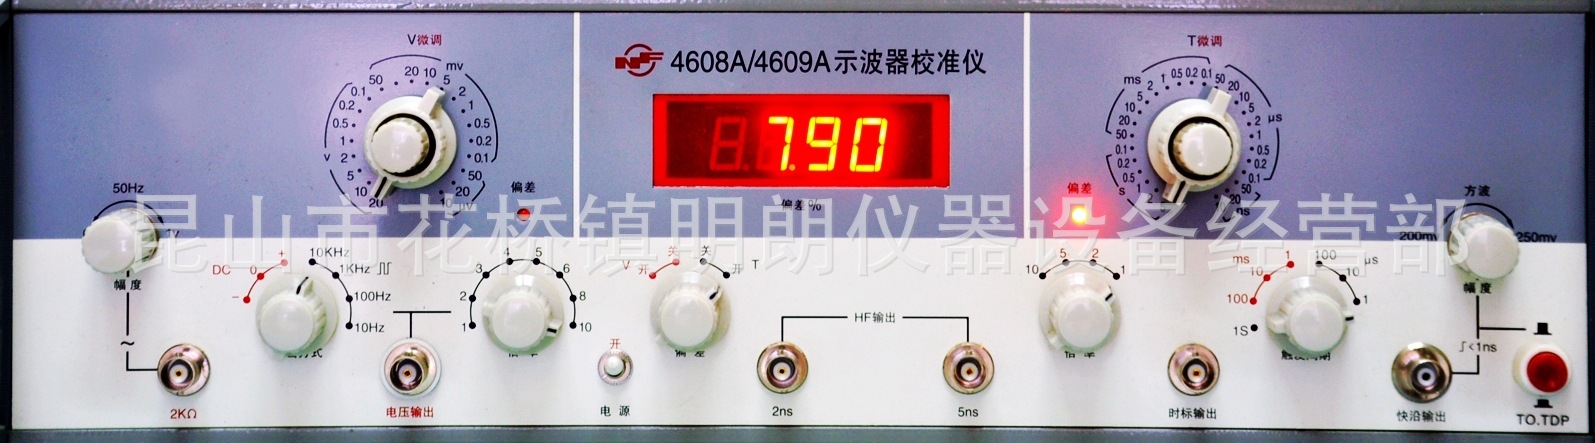 NF460809a